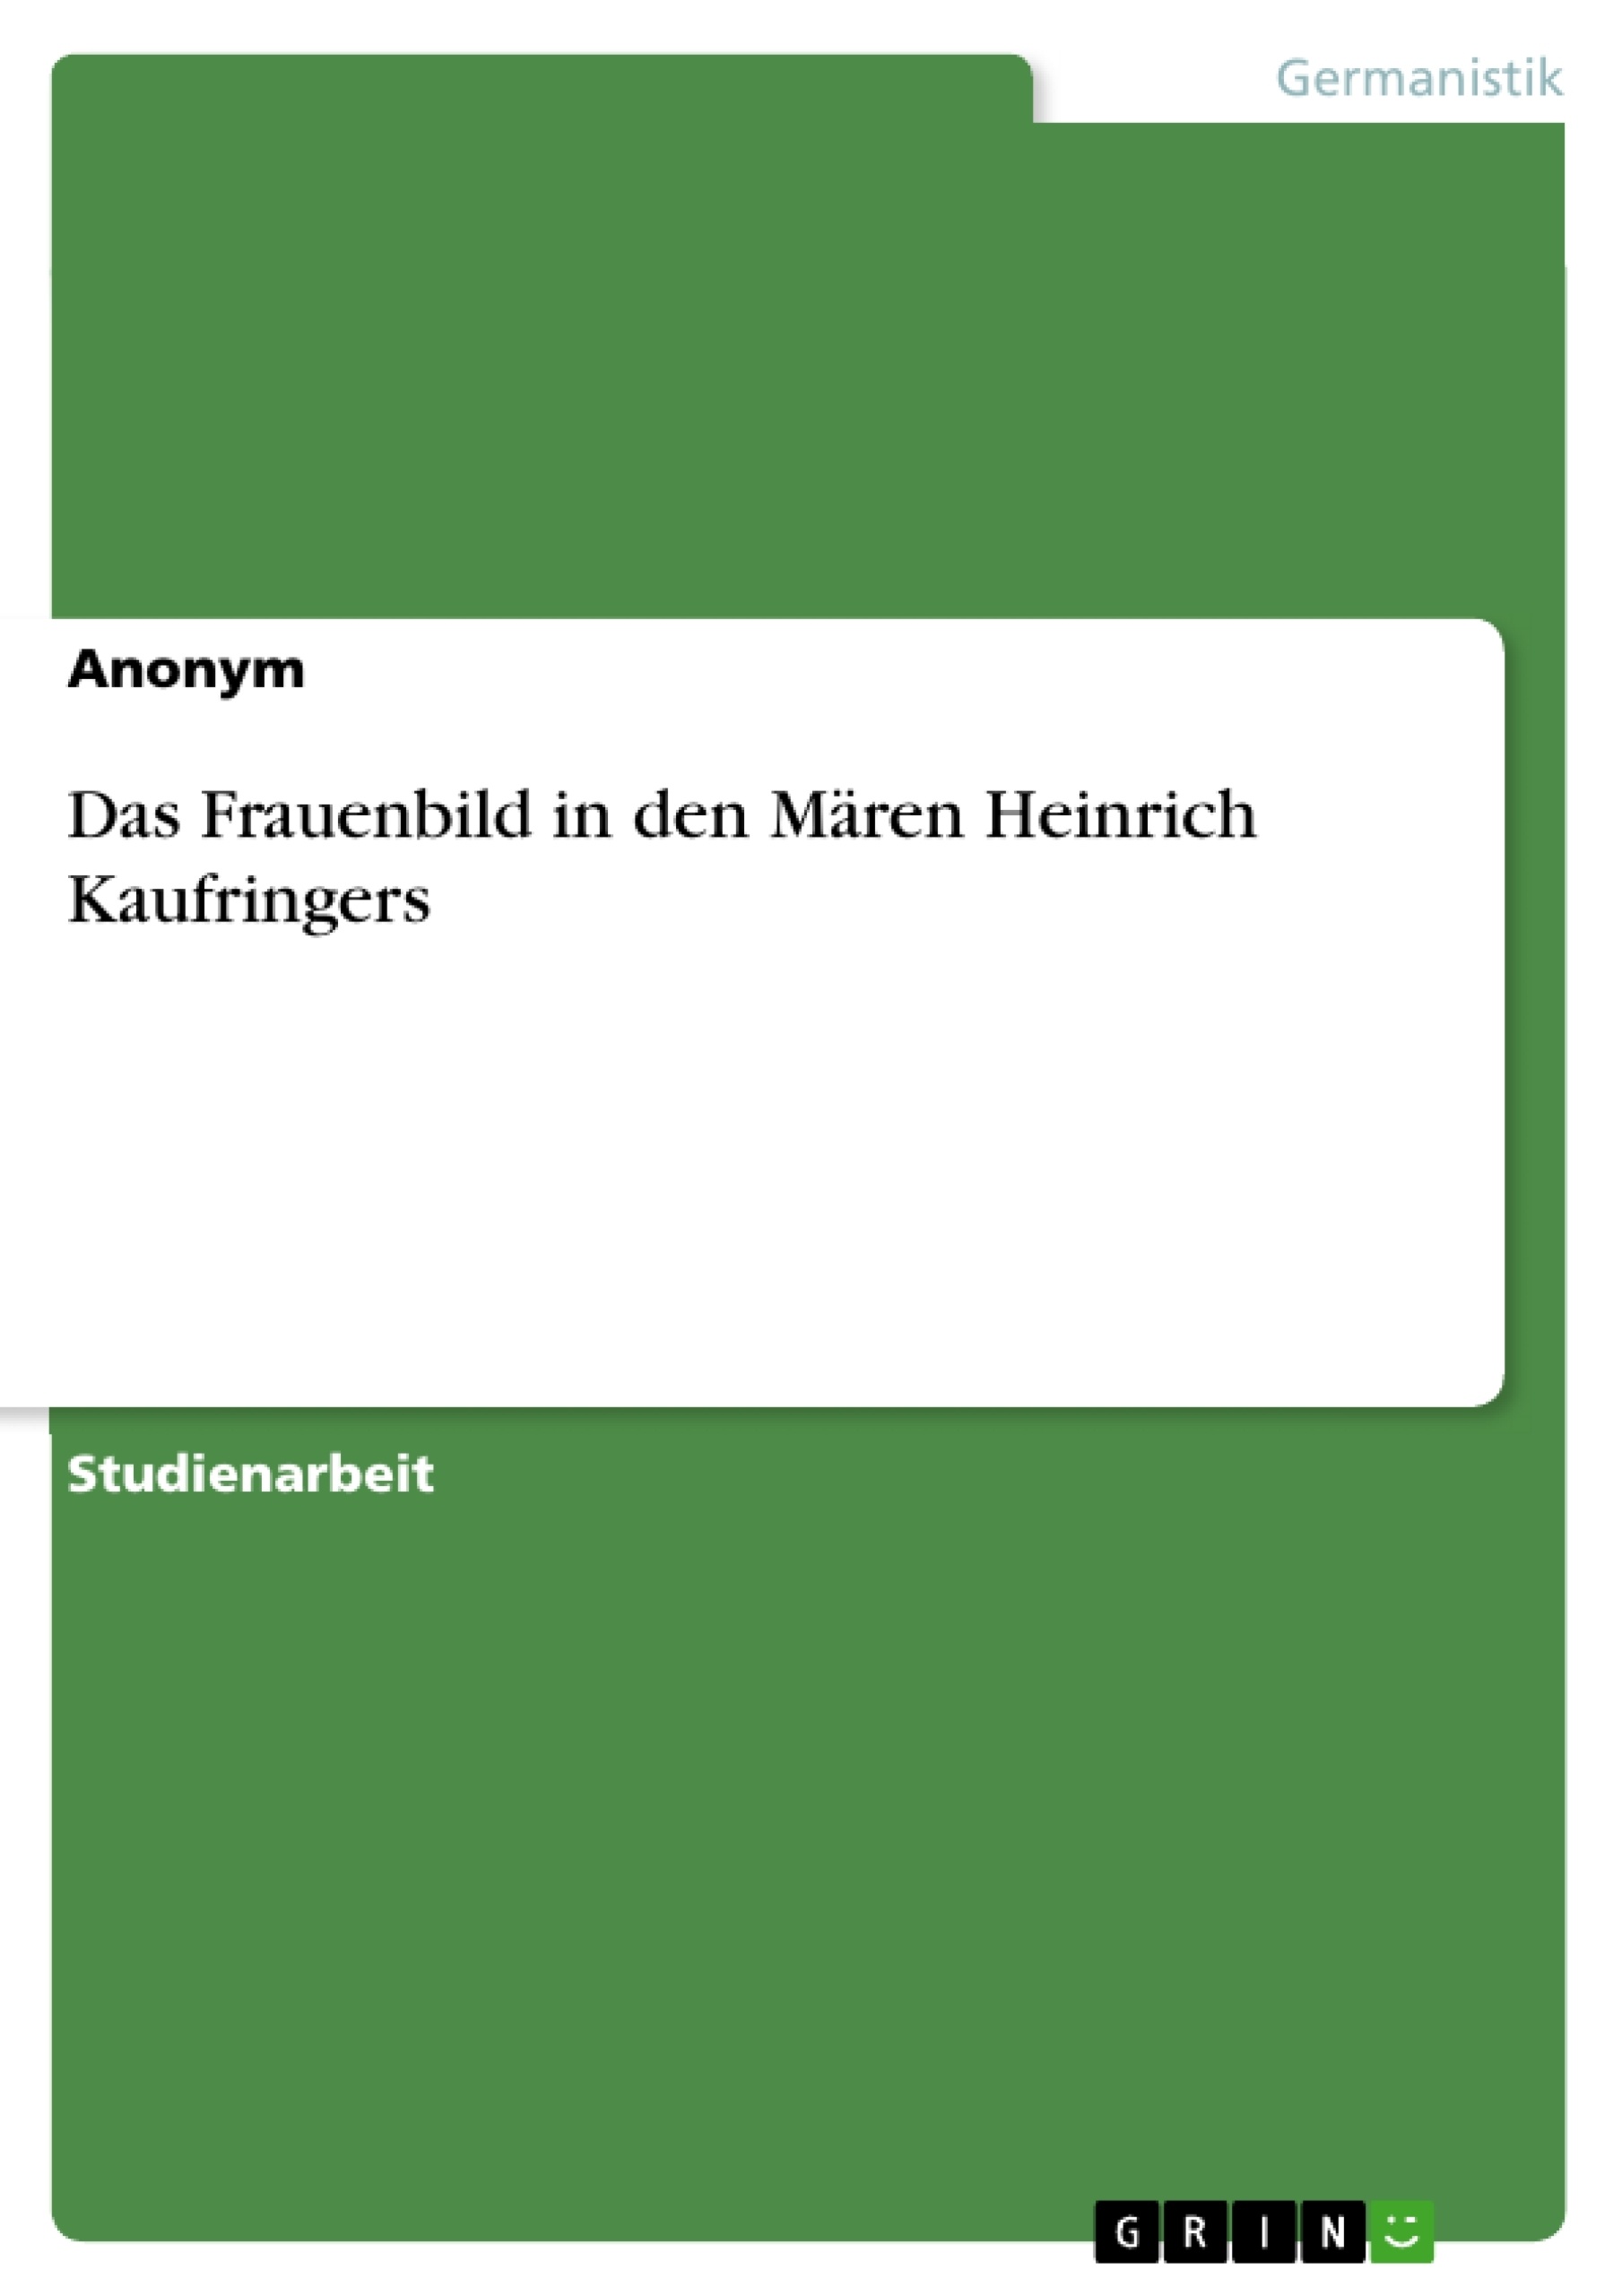 Title: Das Frauenbild in den Mären Heinrich Kaufringers